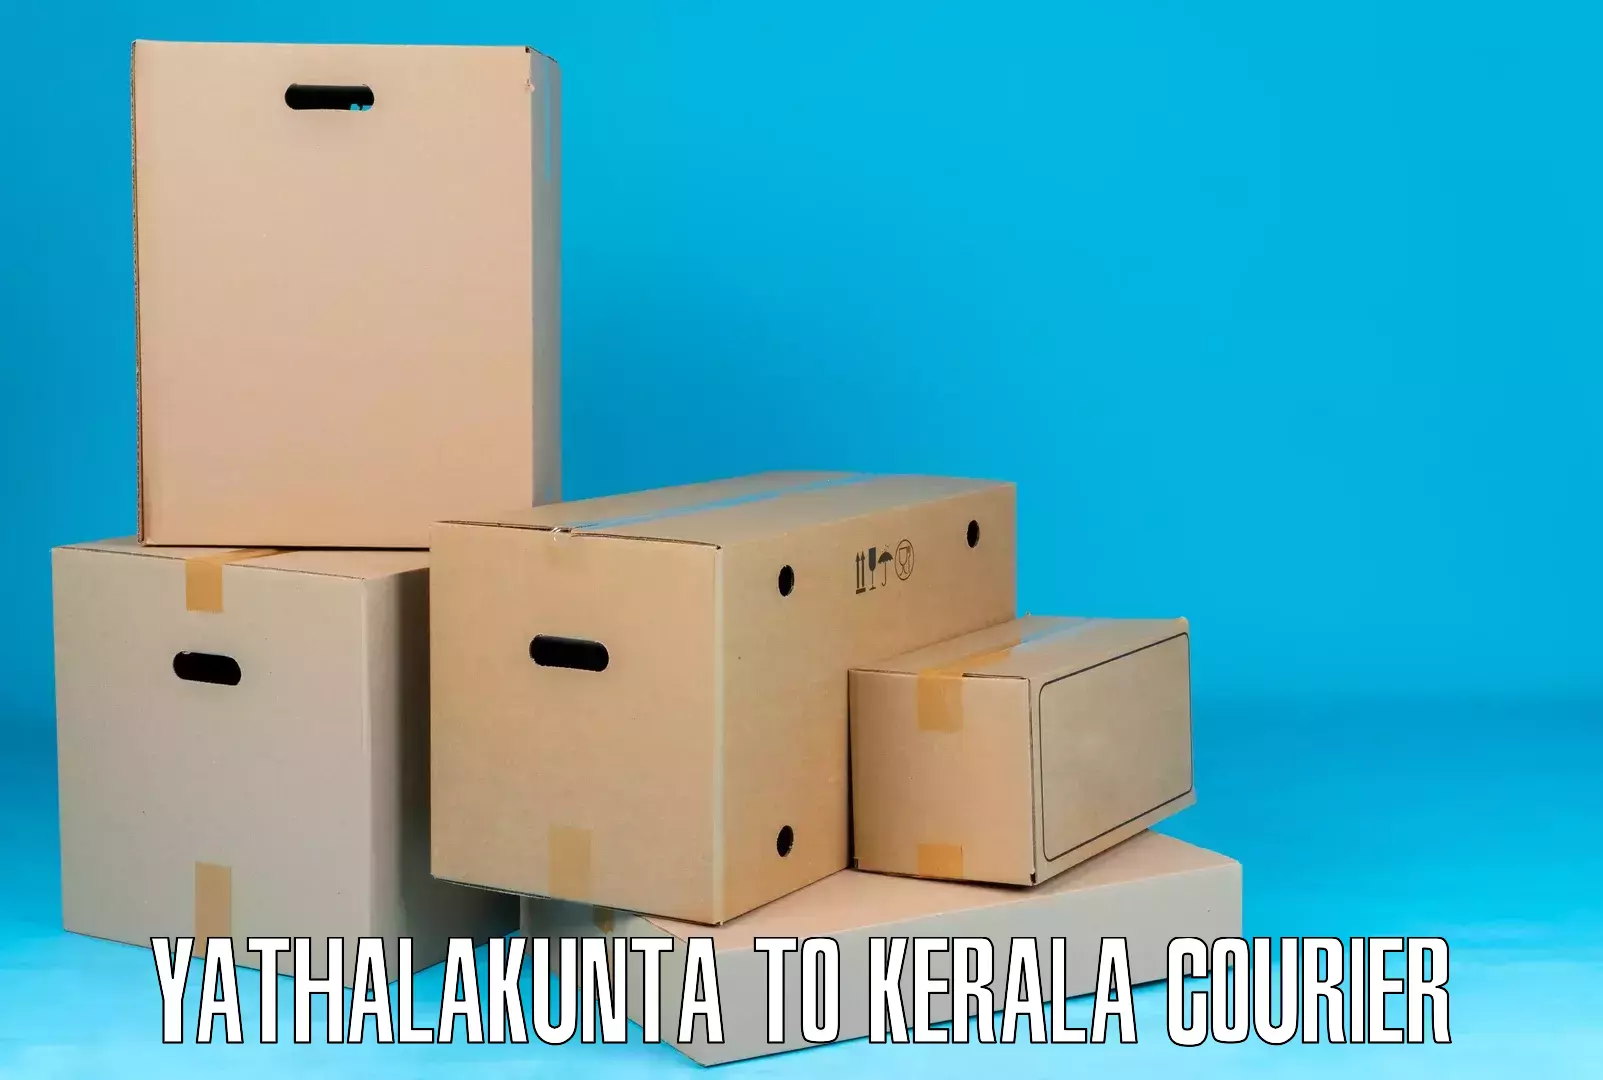 Affordable shipping solutions Yathalakunta to Pala